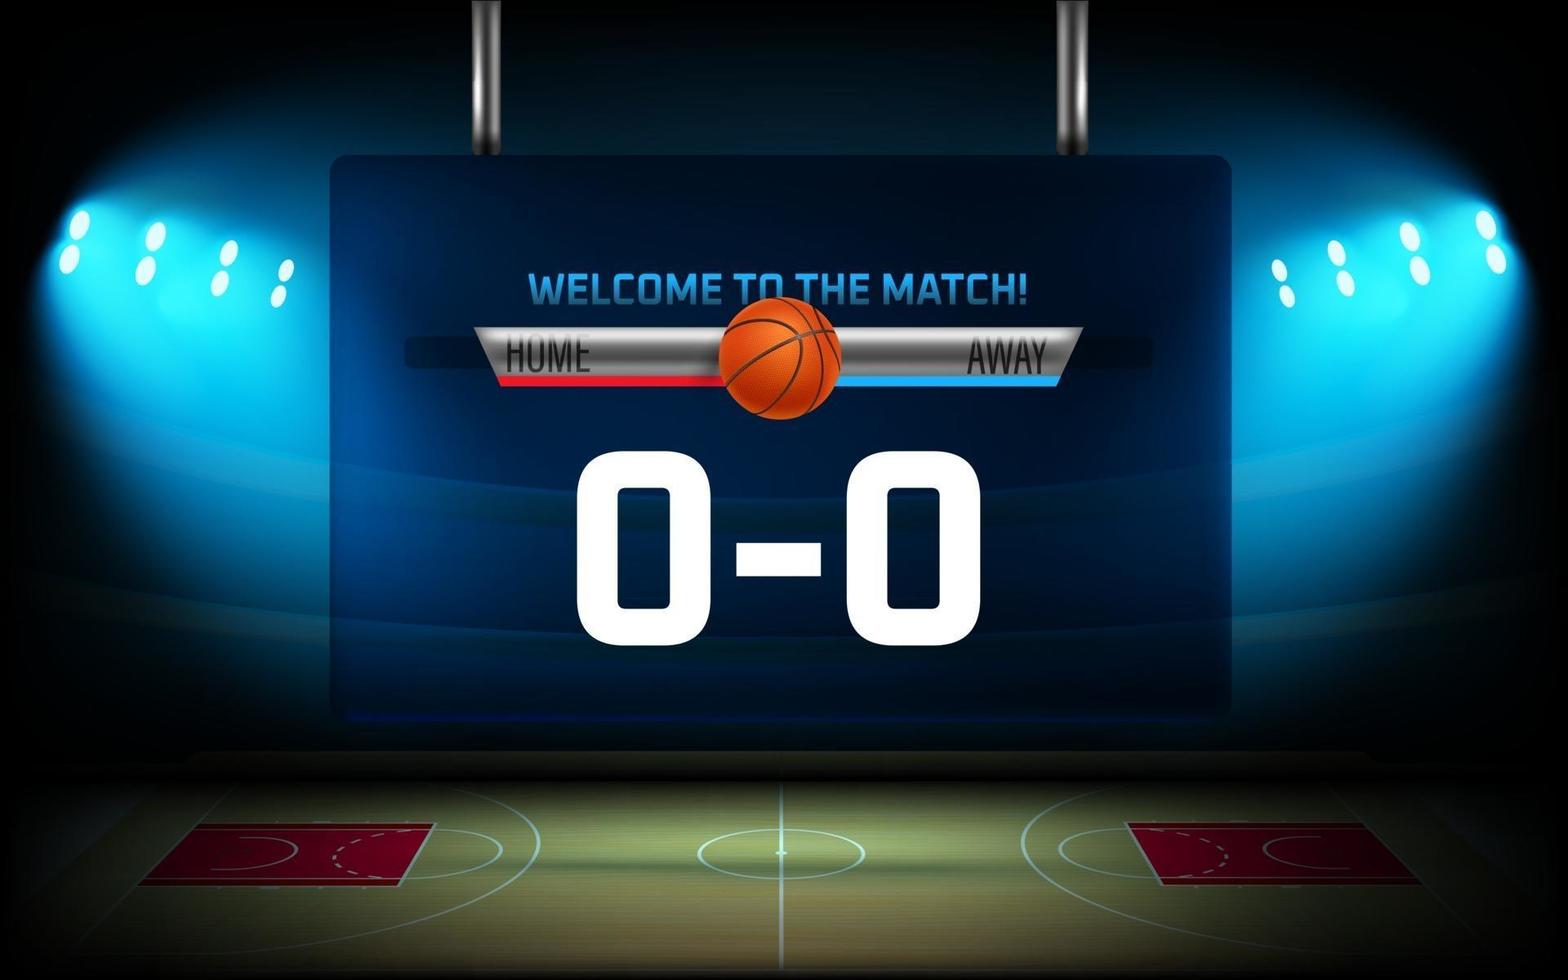 comienzo de los elementos gráficos del partido de baloncesto. Arena de baloncesto iluminada con marcador vector